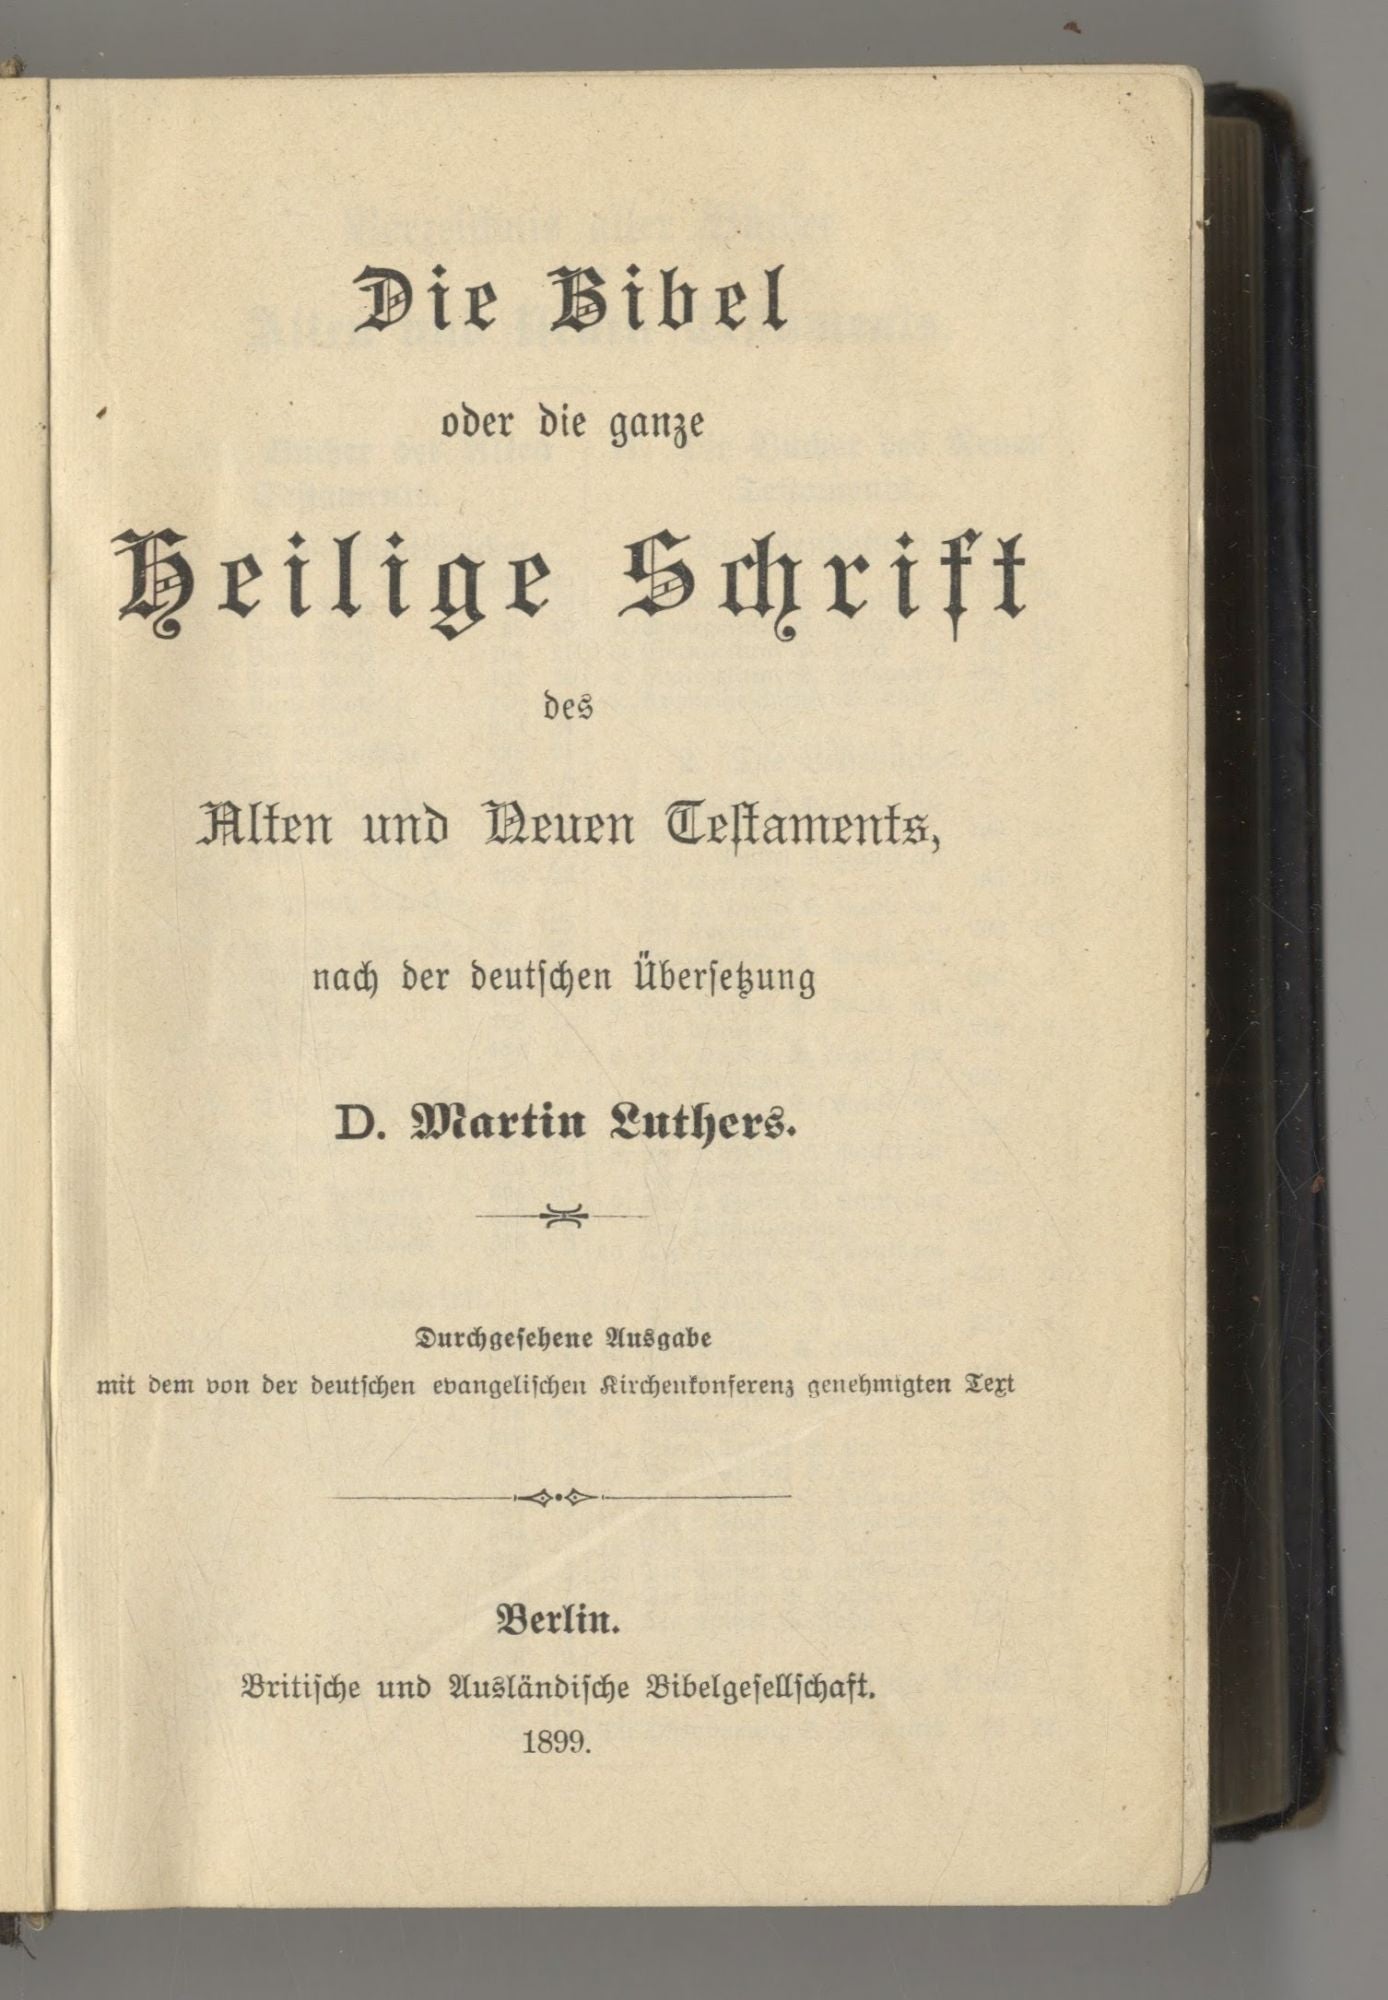 Book #27349 Die Bibel Oder Die Ganze Heilige Schrift Des Alten Und Neuen Testaments Nach Der Deutschen Übersetzung Dr. Martin Luthers